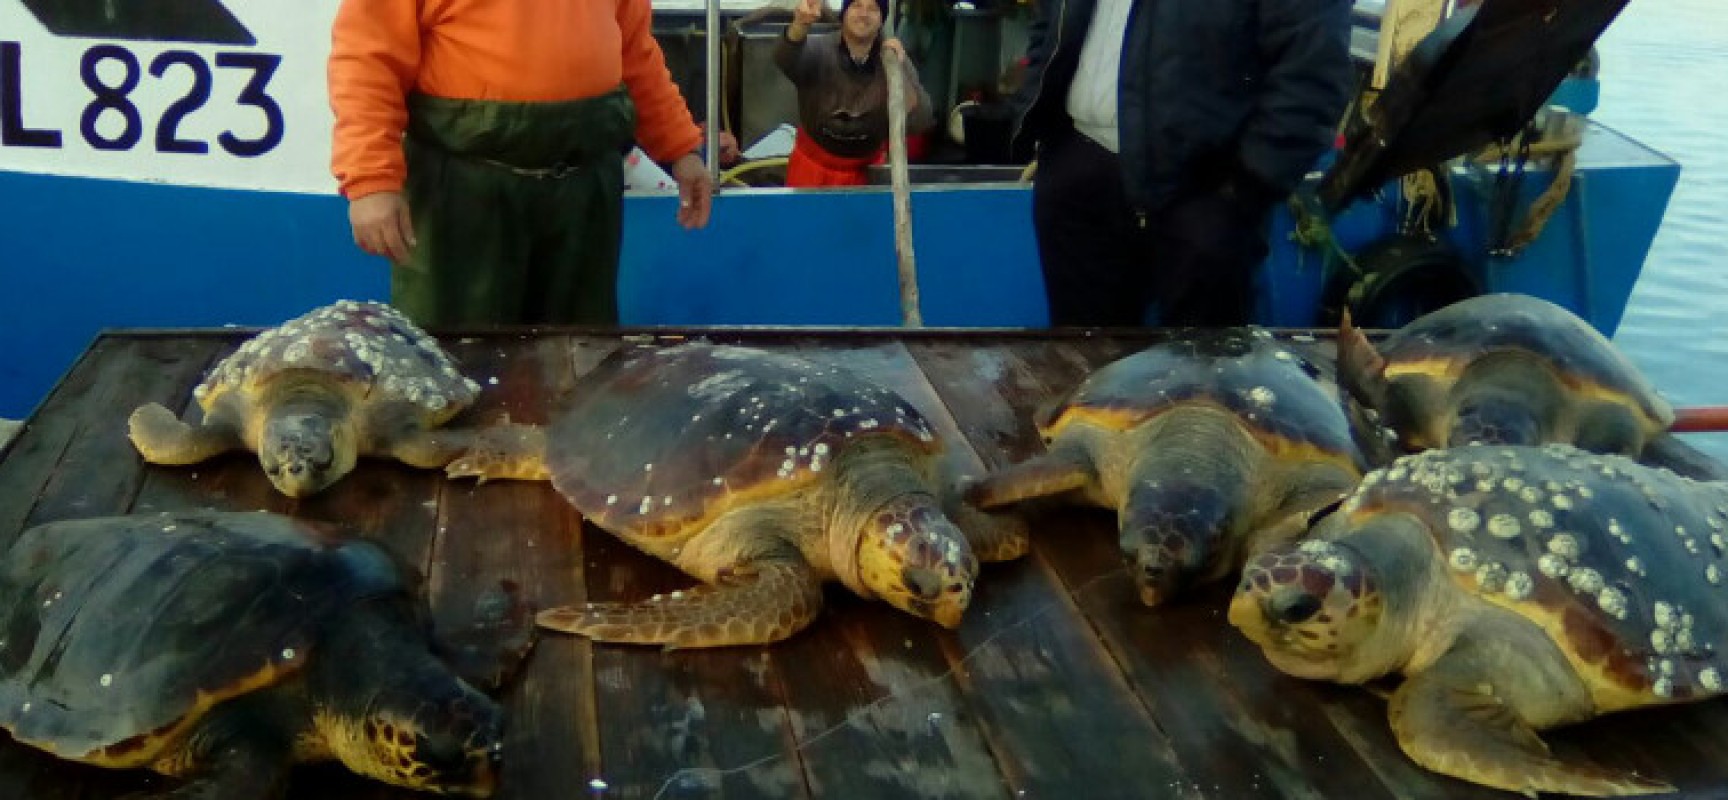 Recupero record di 18 tartarughe marine ad opera delle marinerie di Bisceglie e Trani / FOTO